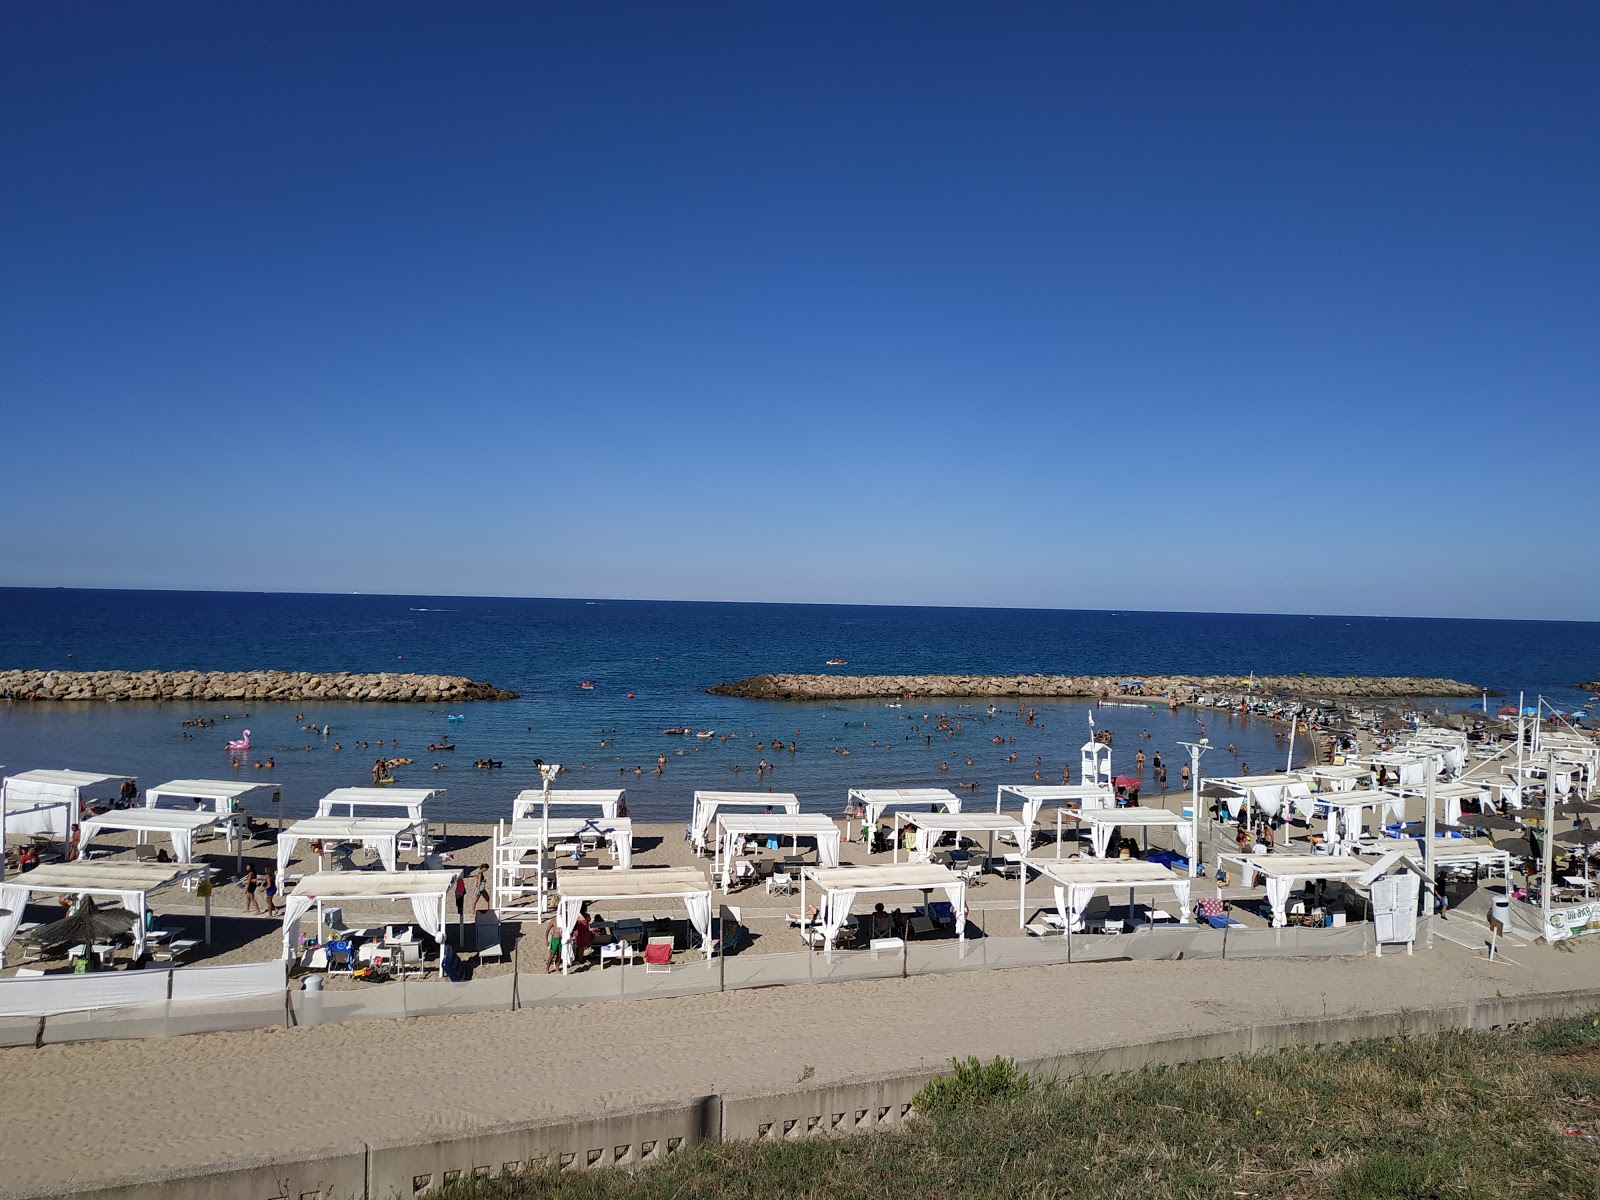 Campo di Mare beach'in fotoğrafı plaj tatil beldesi alanı